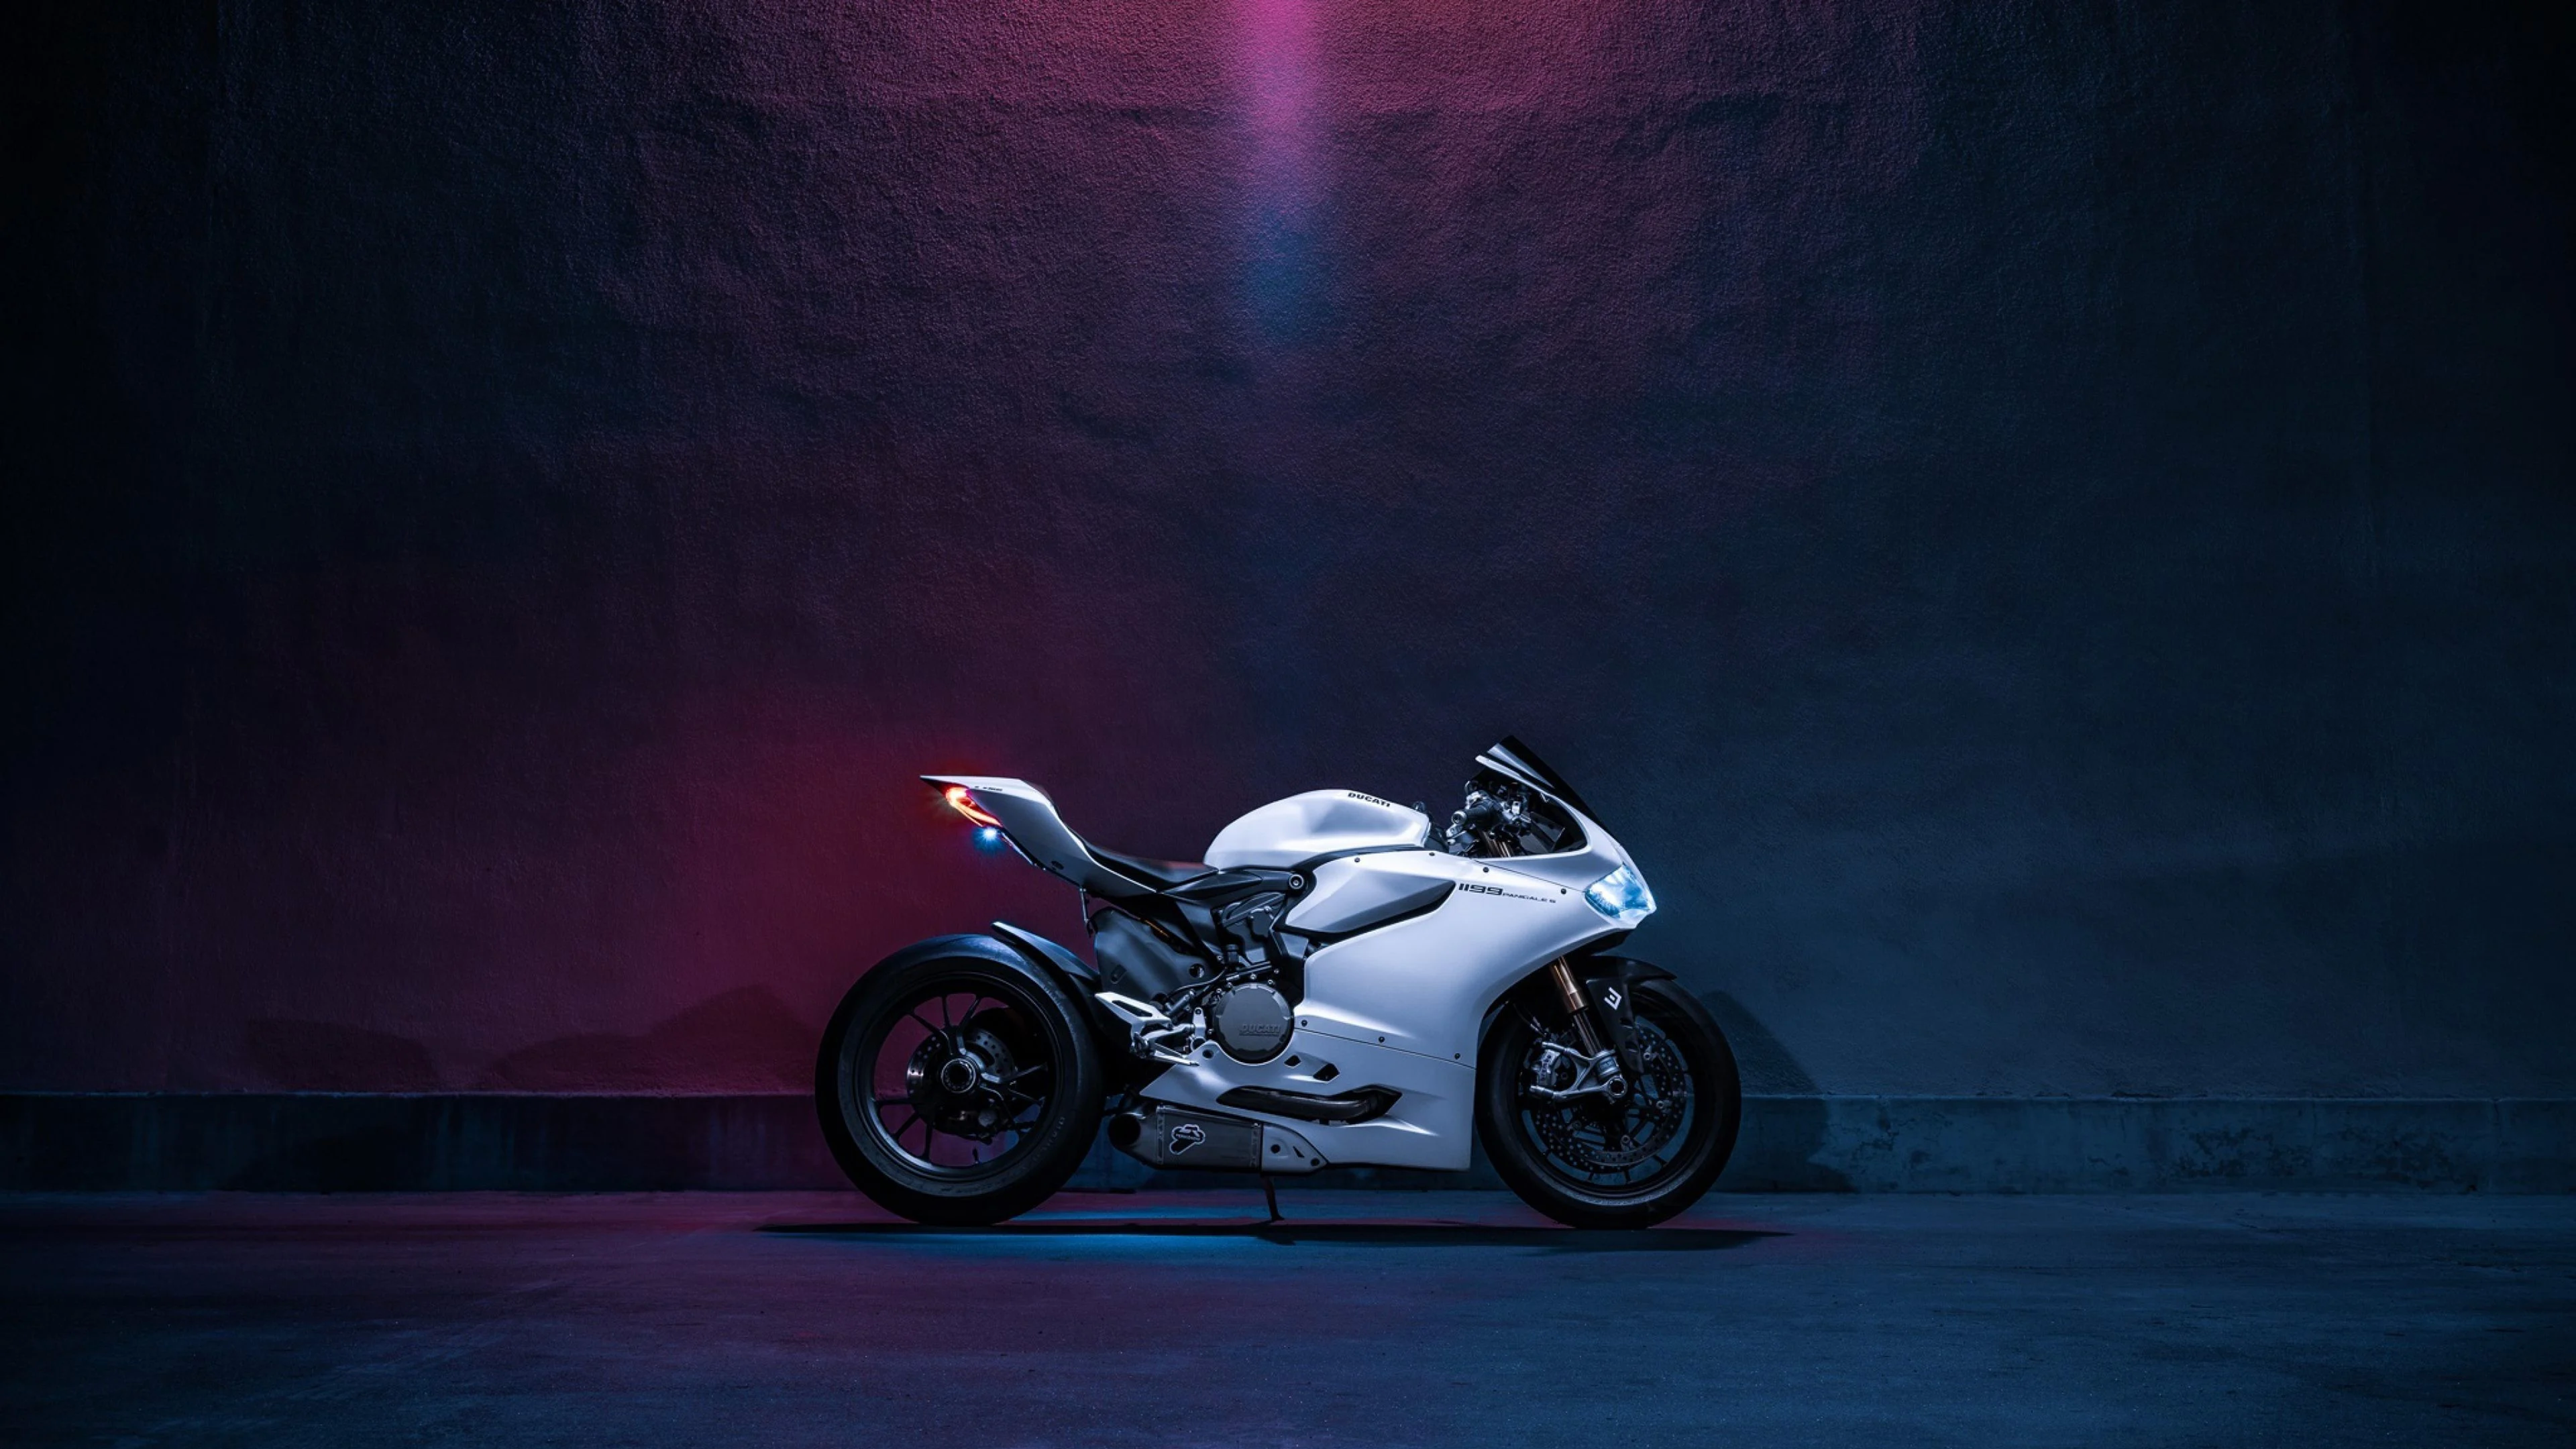 Hình nền Moto Yamaha R6 chất lượng cao